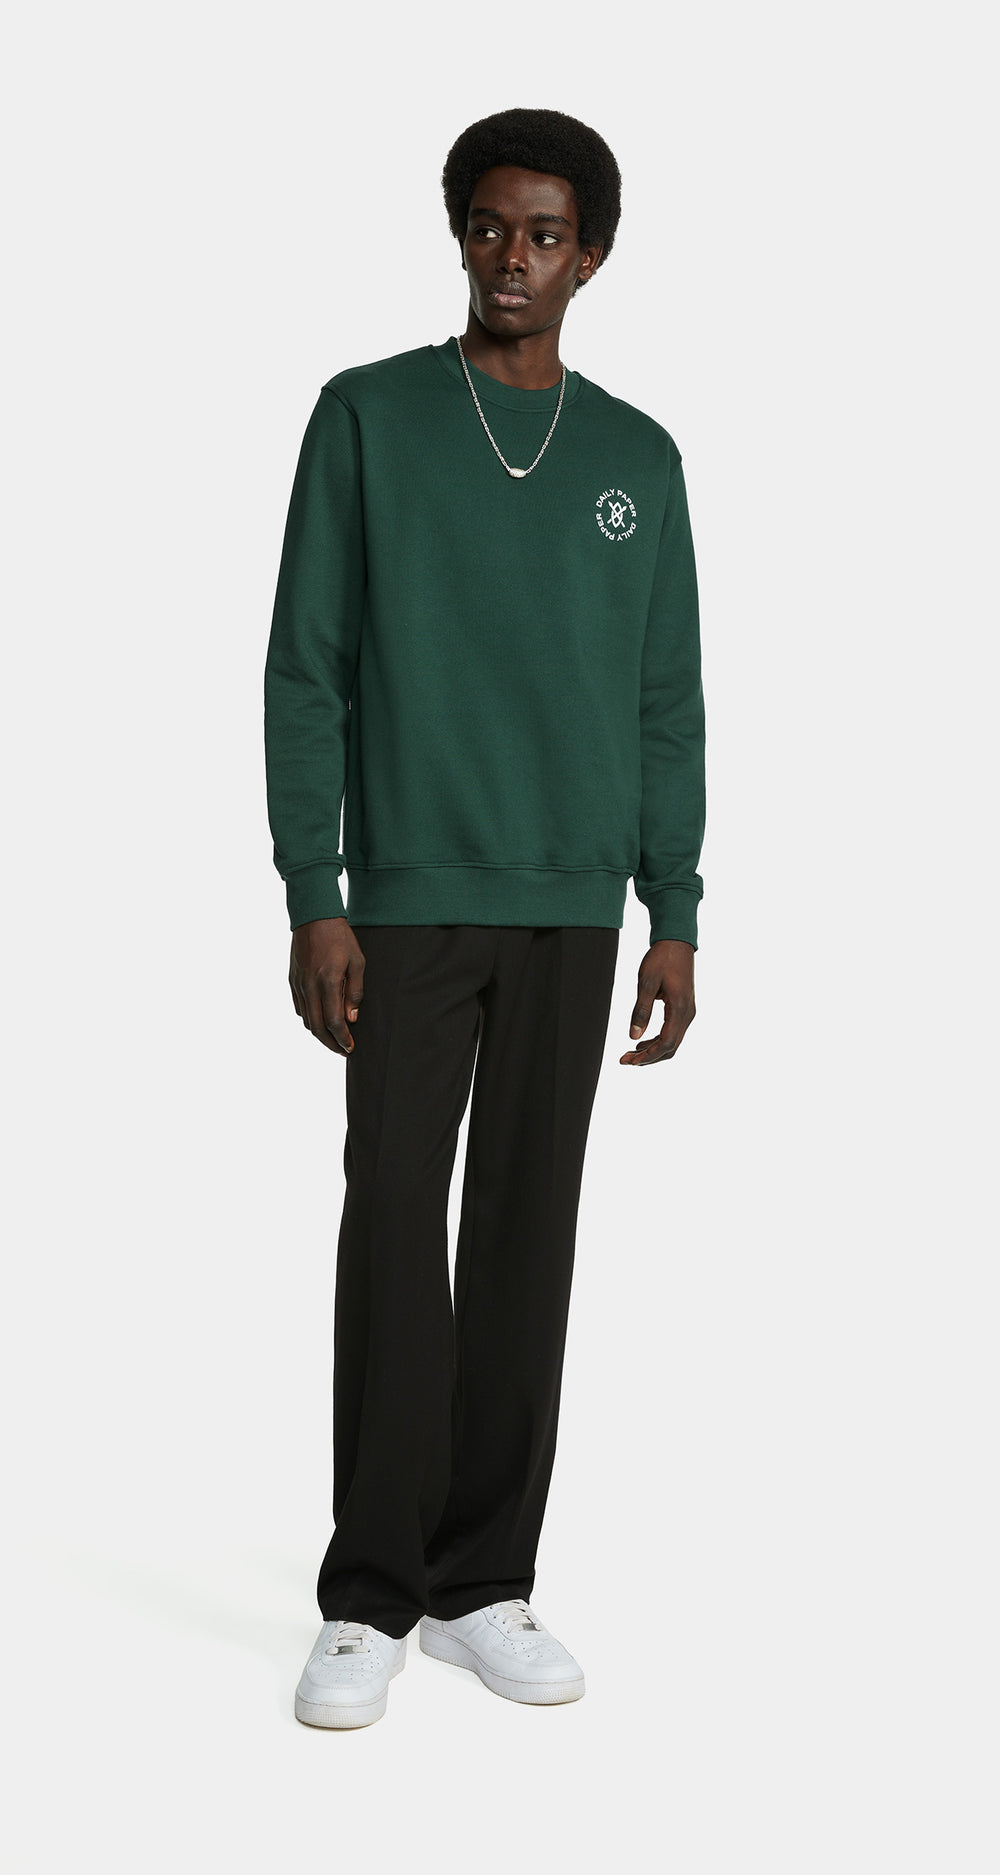 DP - Pine Green Circle Sweater - Men - Front